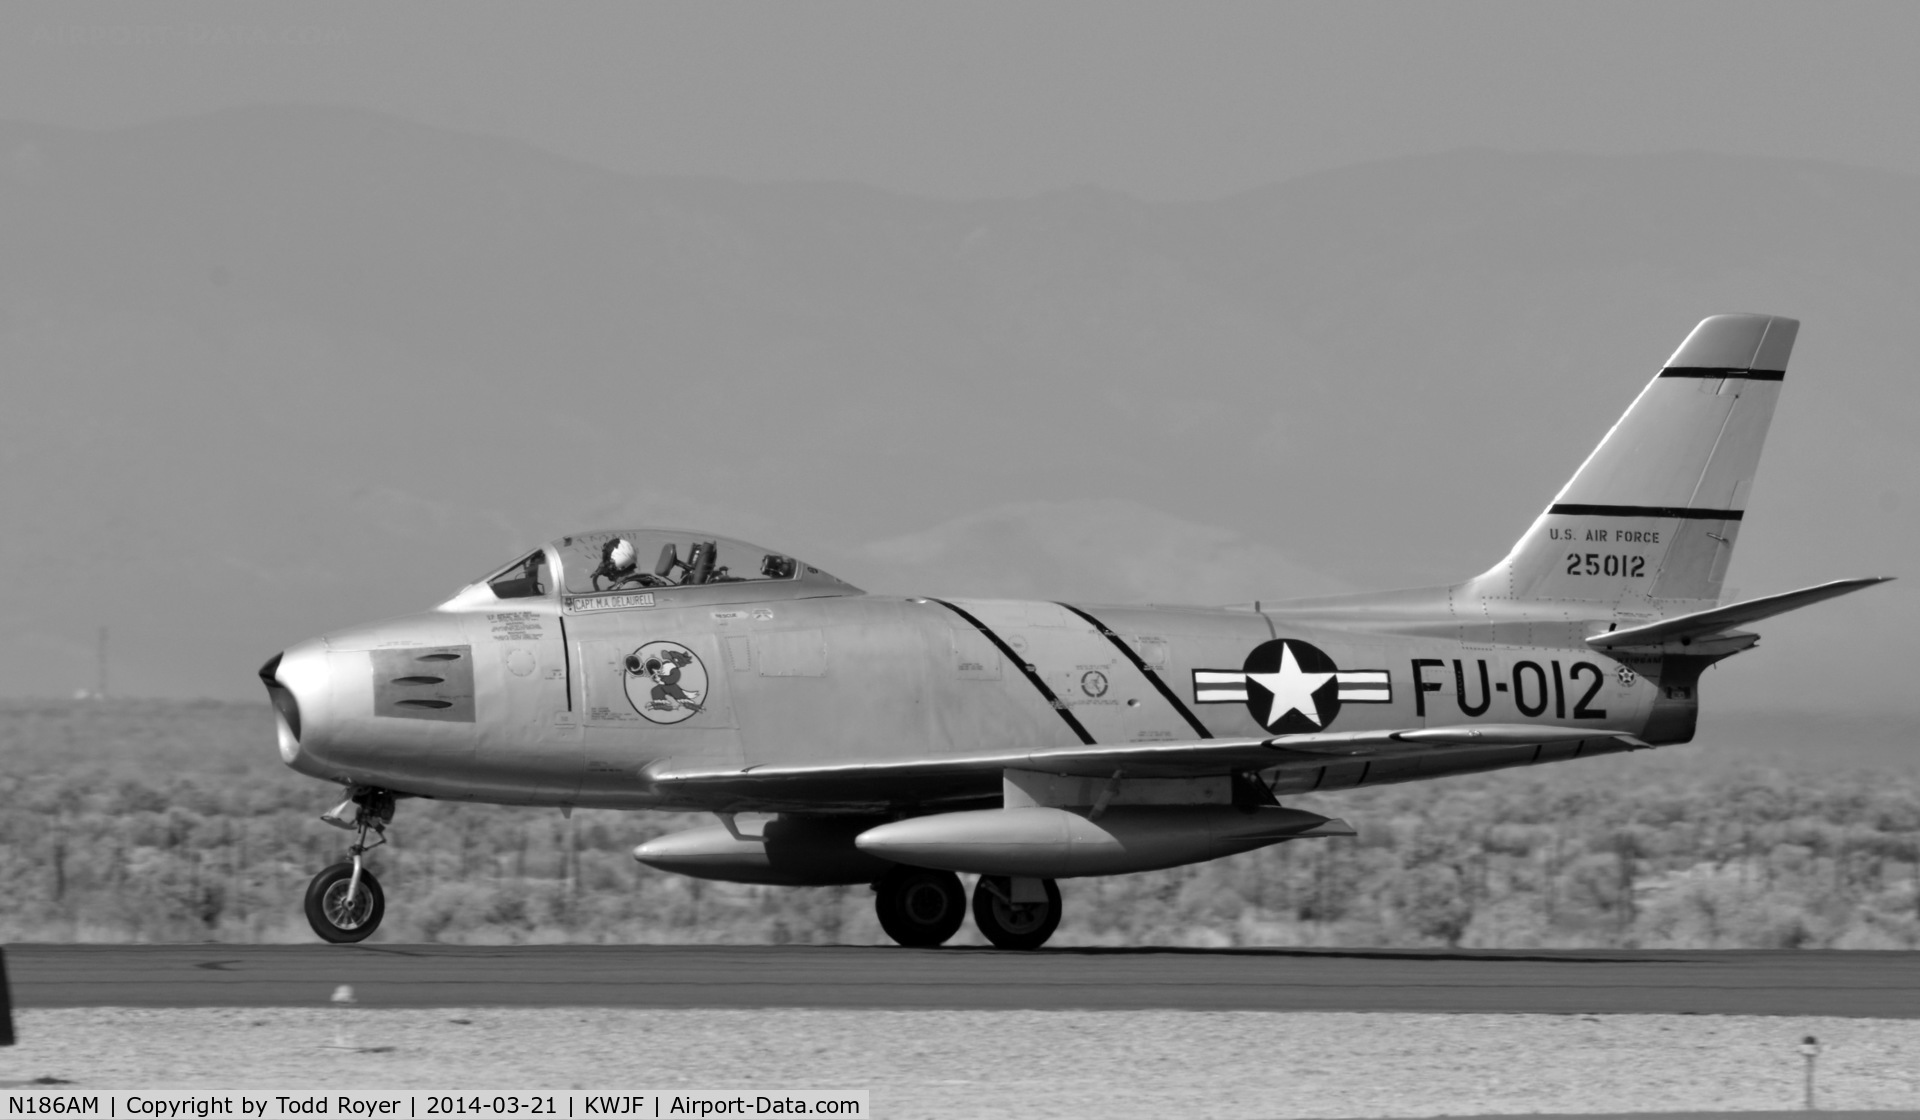 N186AM, 1952 North American F-86F Sabre C/N 191-708, Take off roll